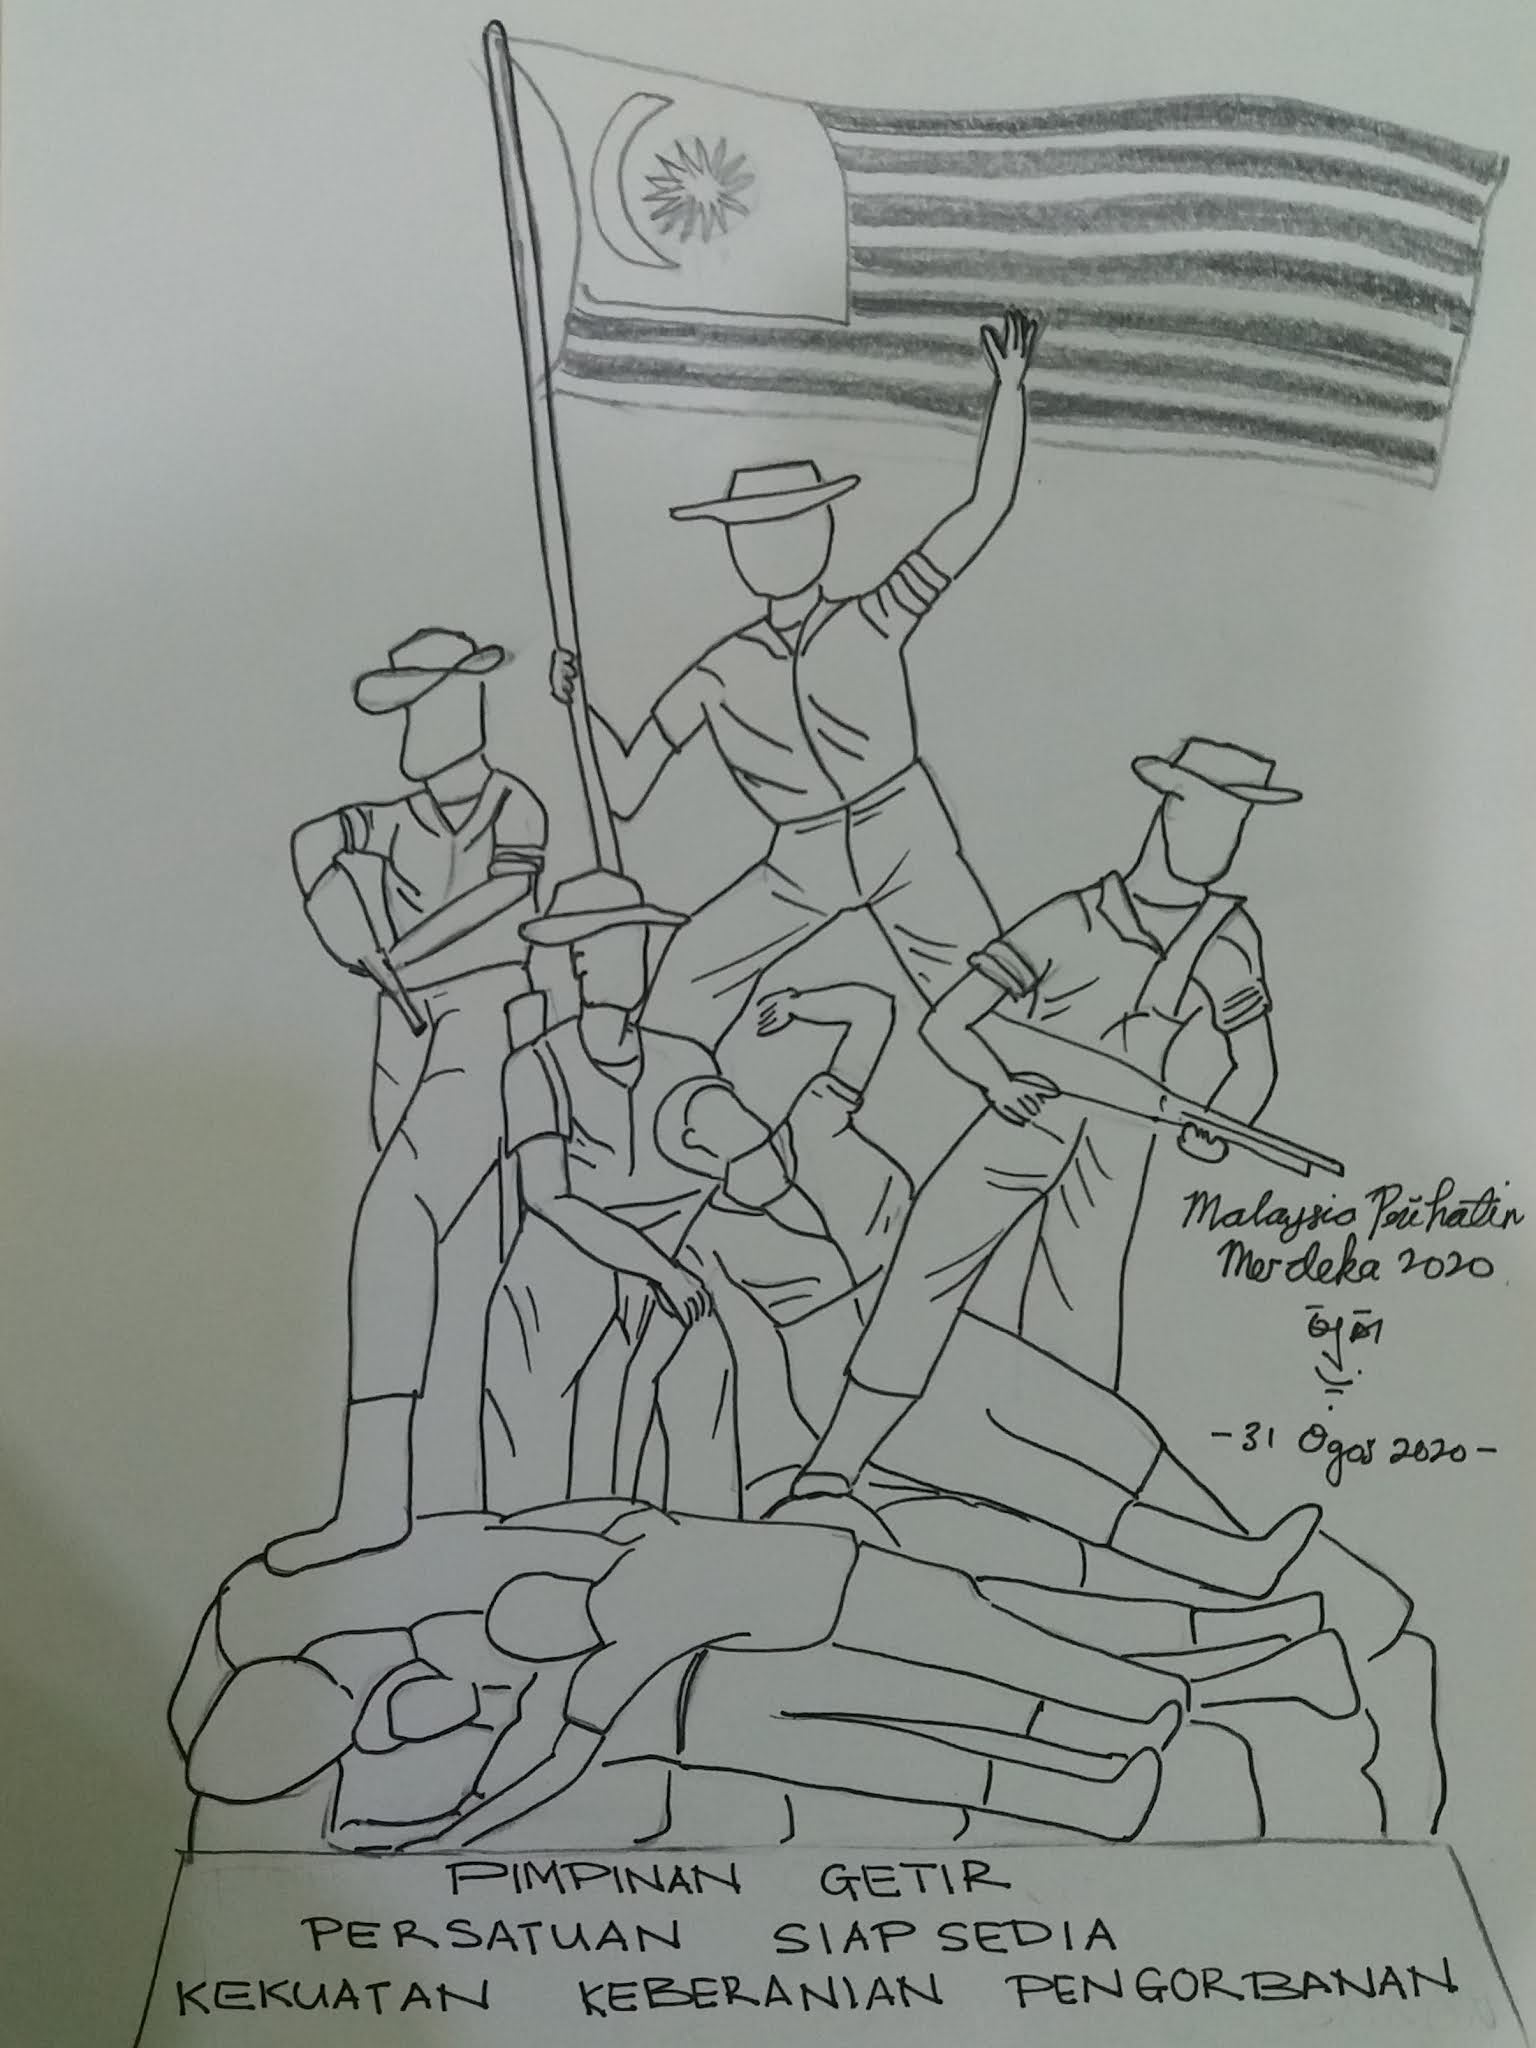 penulisan.karya: Puisi kemerdekaan " Malaysia Prihatin"